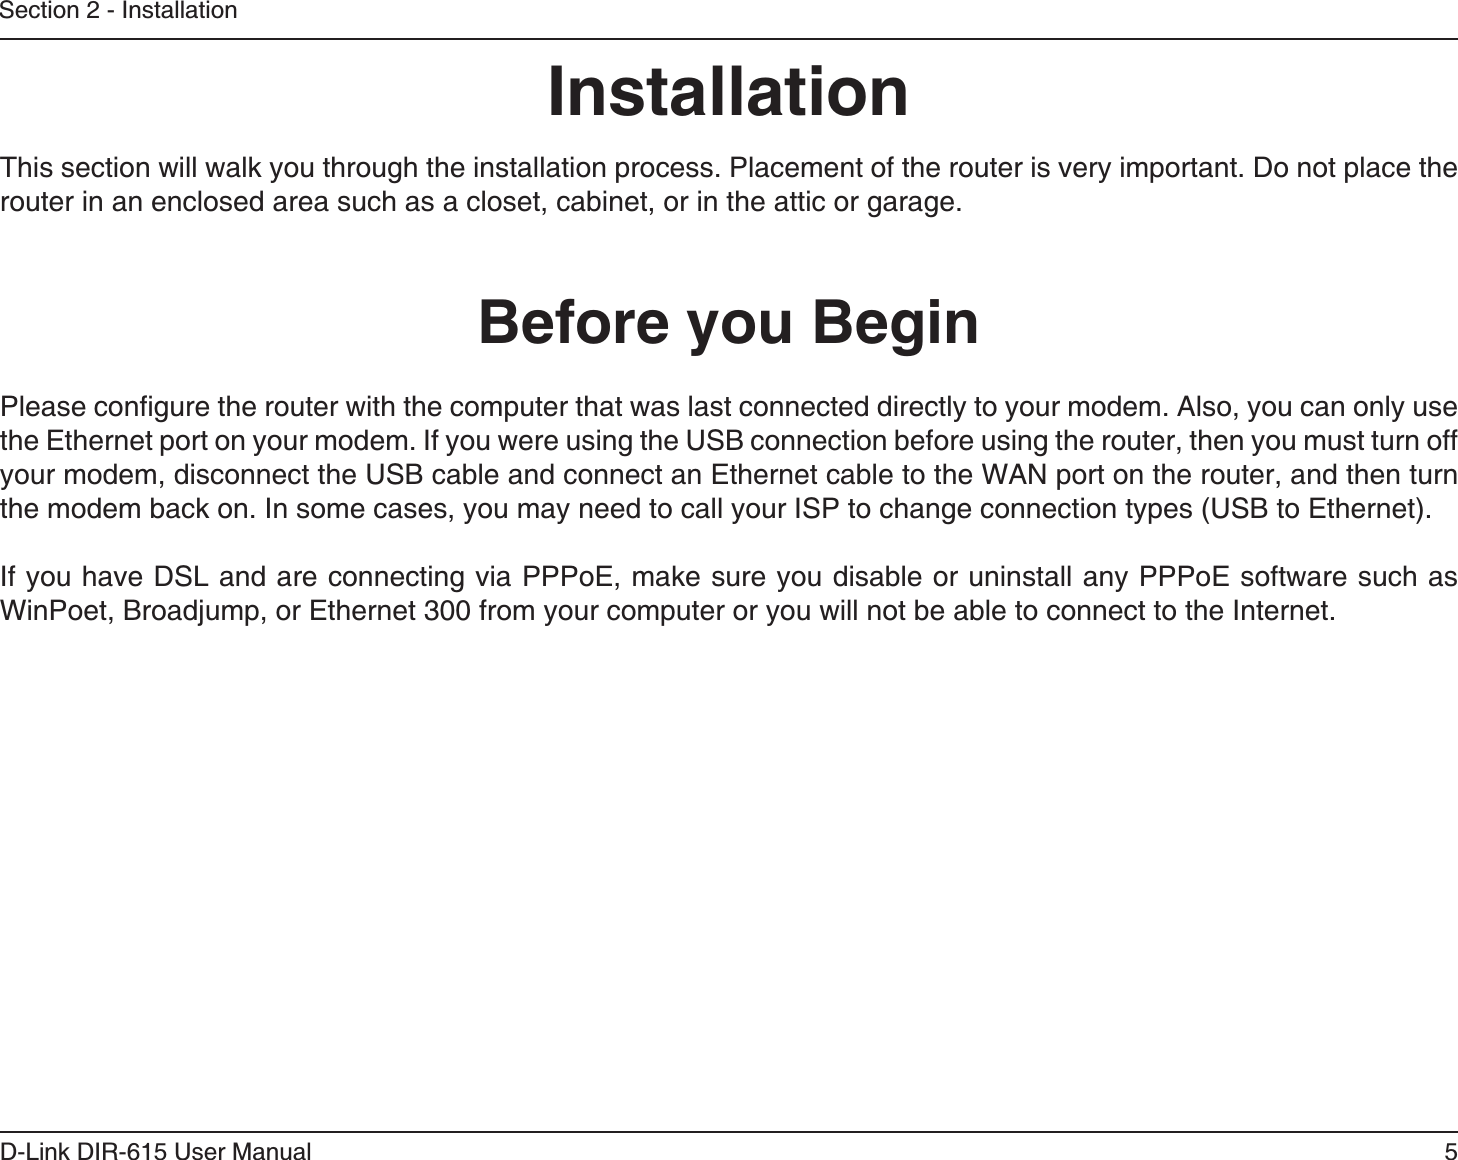 5D-Link DIR-615 User ManualSection 2 - Installation$GHQTG[QW$GIKPInstallationThis section will walk you through the installation process. Placement of the router is very important. Do not place the TQWVGTKPCPGPENQUGFCTGCUWEJCUCENQUGVECDKPGVQTKPVJGCVVKEQTICTCIG2NGCUGEQPſIWTGVJGTQWVGTYKVJVJGEQORWVGTVJCVYCUNCUVEQPPGEVGFFKTGEVN[VQ[QWTOQFGO#NUQ[QWECPQPN[WUGVJG&apos;VJGTPGVRQTVQP[QWTOQFGO+H[QWYGTGWUKPIVJG75$EQPPGEVKQPDGHQTGWUKPIVJGTQWVGTVJGP[QWOWUVVWTPQHH[QWTOQFGOFKUEQPPGEVVJG75$ECDNGCPFEQPPGEVCP&apos;VJGTPGVECDNGVQVJG9#0RQTVQPVJGTQWVGTCPFVJGPVWTPVJGOQFGODCEMQP+PUQOGECUGU[QWOC[PGGFVQECNN[QWT+52VQEJCPIGEQPPGEVKQPV[RGU75$VQ&apos;VJGTPGV+H[QWJCXG&amp;5.CPFCTGEQPPGEVKPIXKC222Q&apos;OCMGUWTG[QWFKUCDNGQTWPKPUVCNNCP[222Q&apos;UQHVYCTGUWEJCU9KP2QGV$TQCFLWORQT&apos;VJGTPGVHTQO[QWTEQORWVGTQT[QWYKNNPQVDGCDNGVQEQPPGEVVQVJG+PVGTPGV